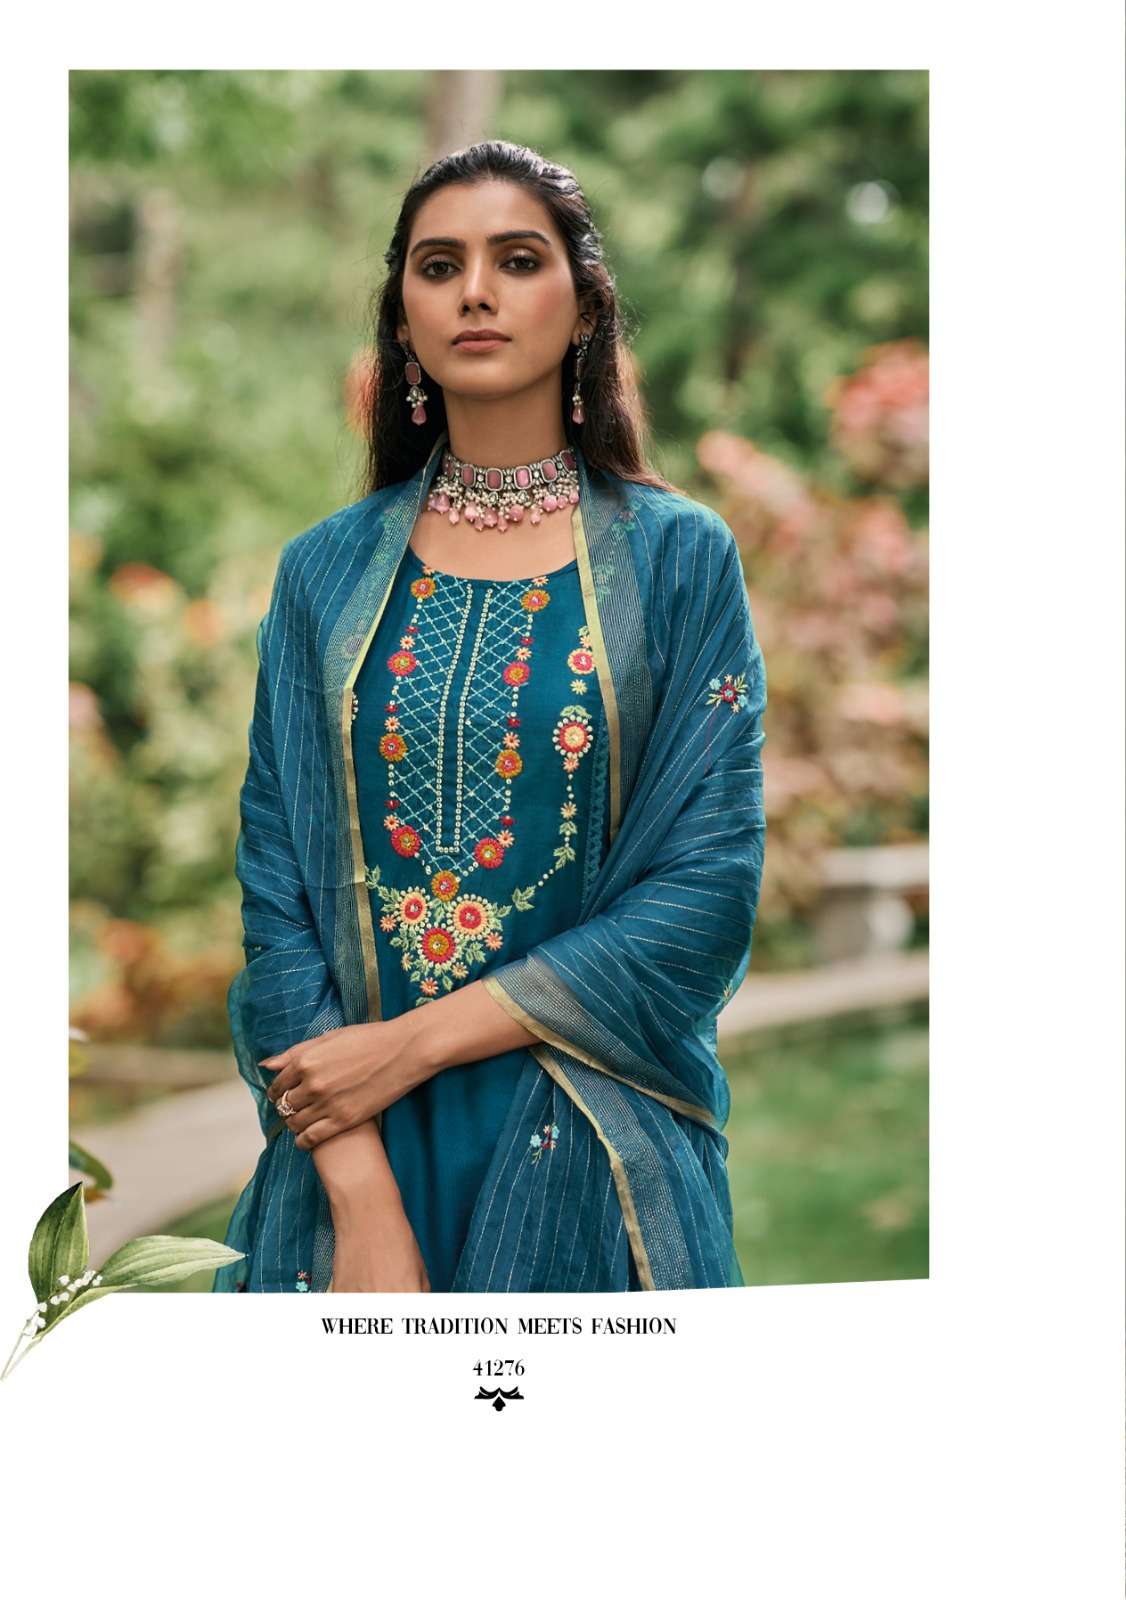 kailee fashion isabel 41271-41276 series latest designer fancy kurti set wholesaler surat gujarat